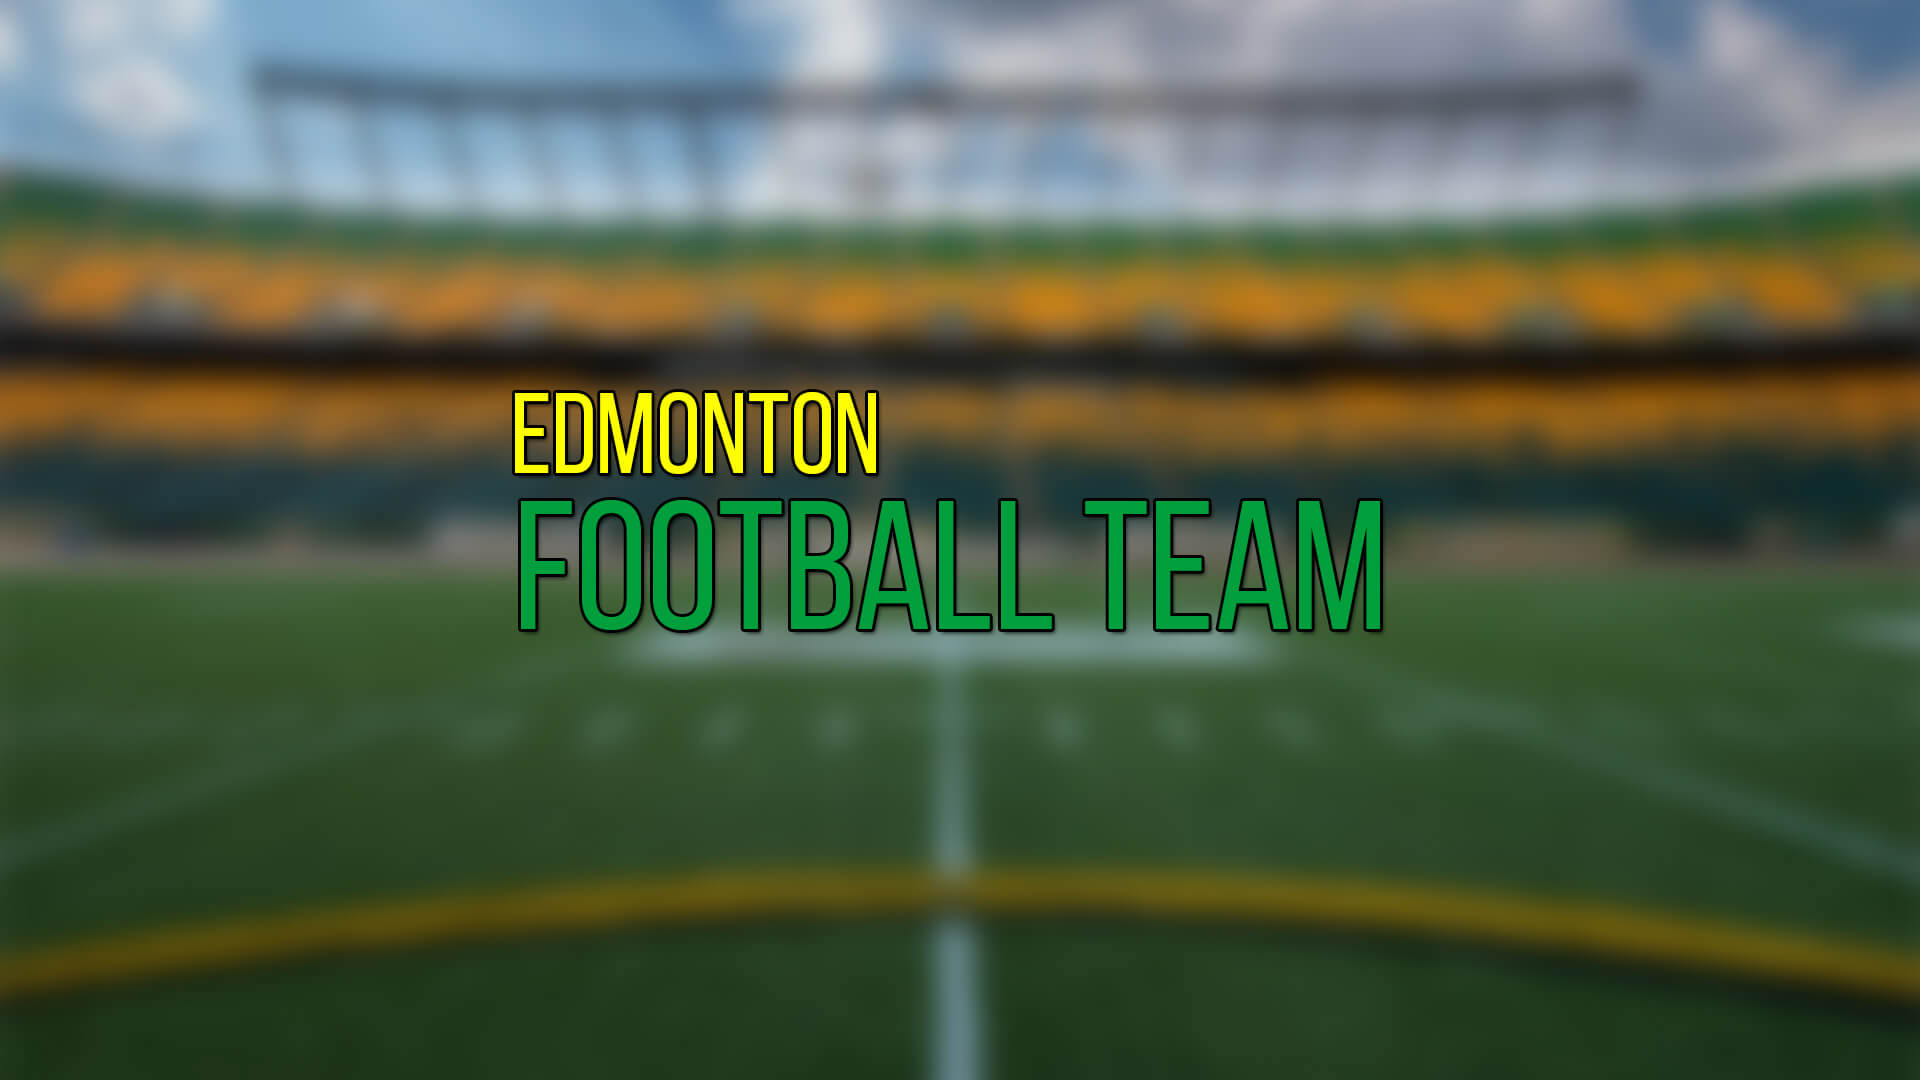 Edmonton Football Team, 2 Oyuncusu ile Kontratı Yeniledi | Korumalı Futbol Türkiye